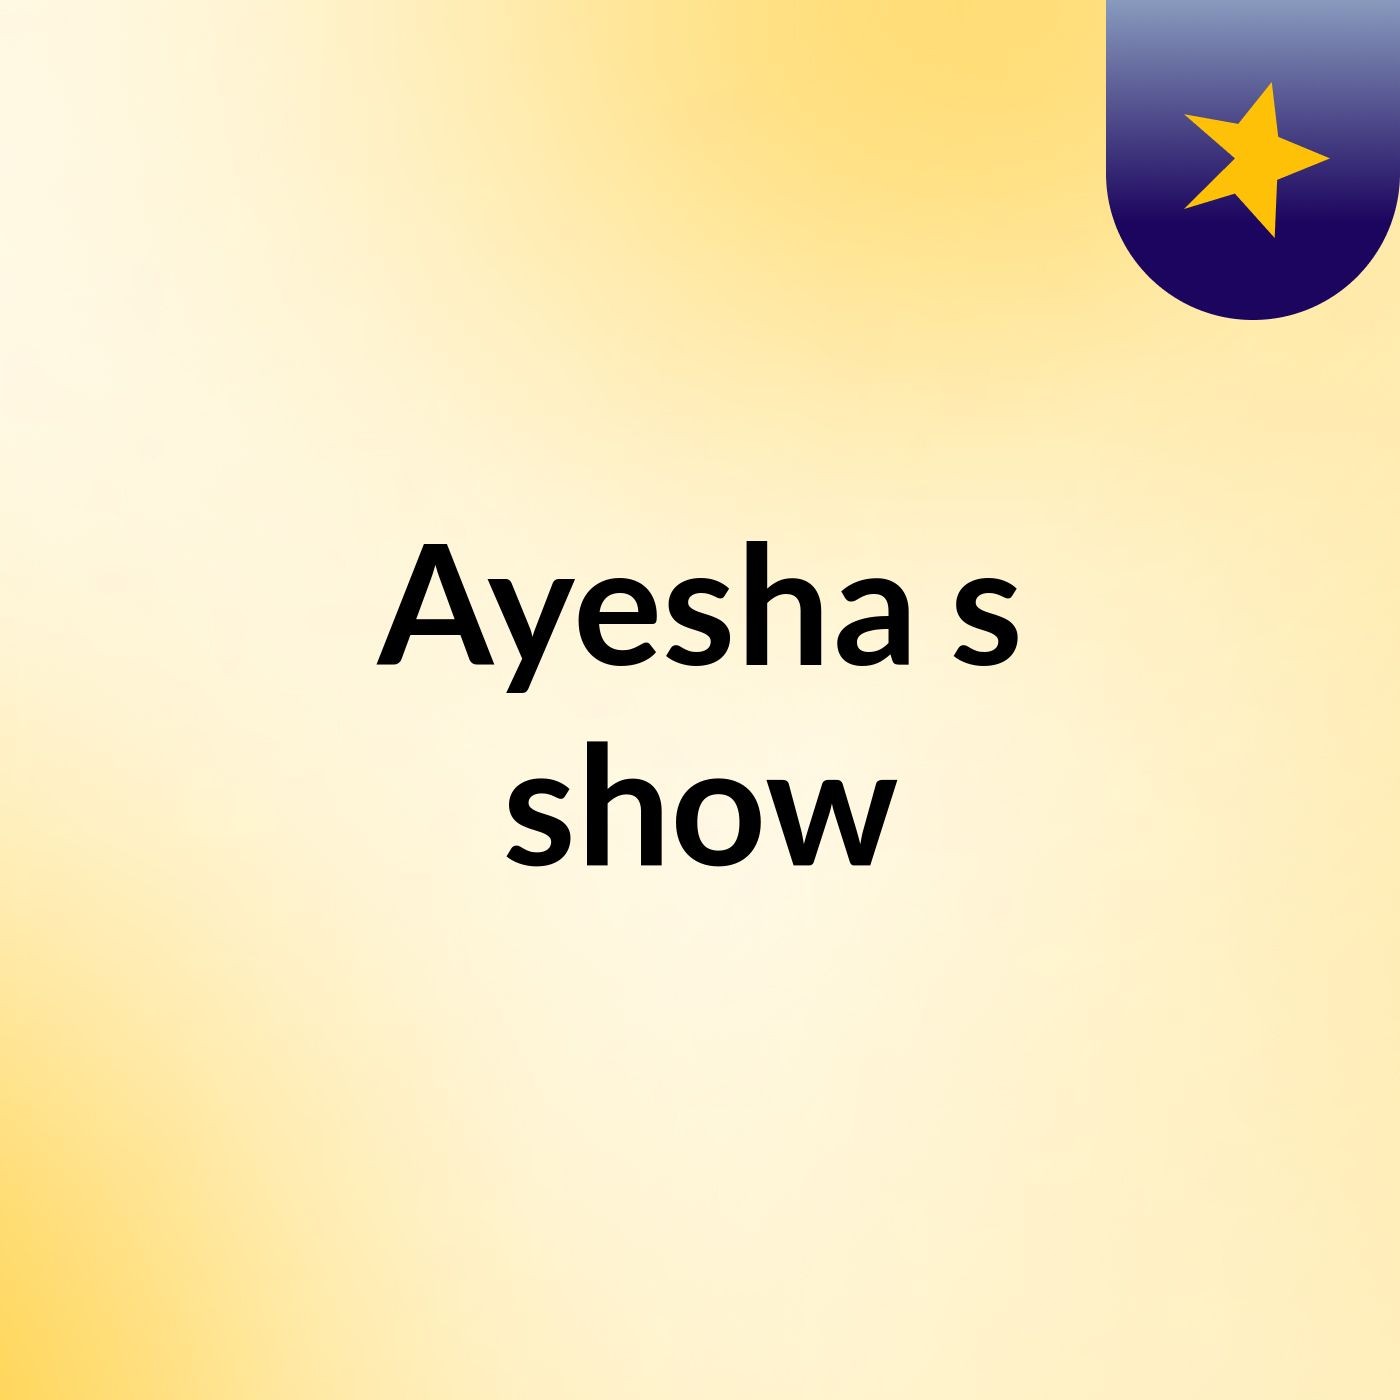 Ayesha's show